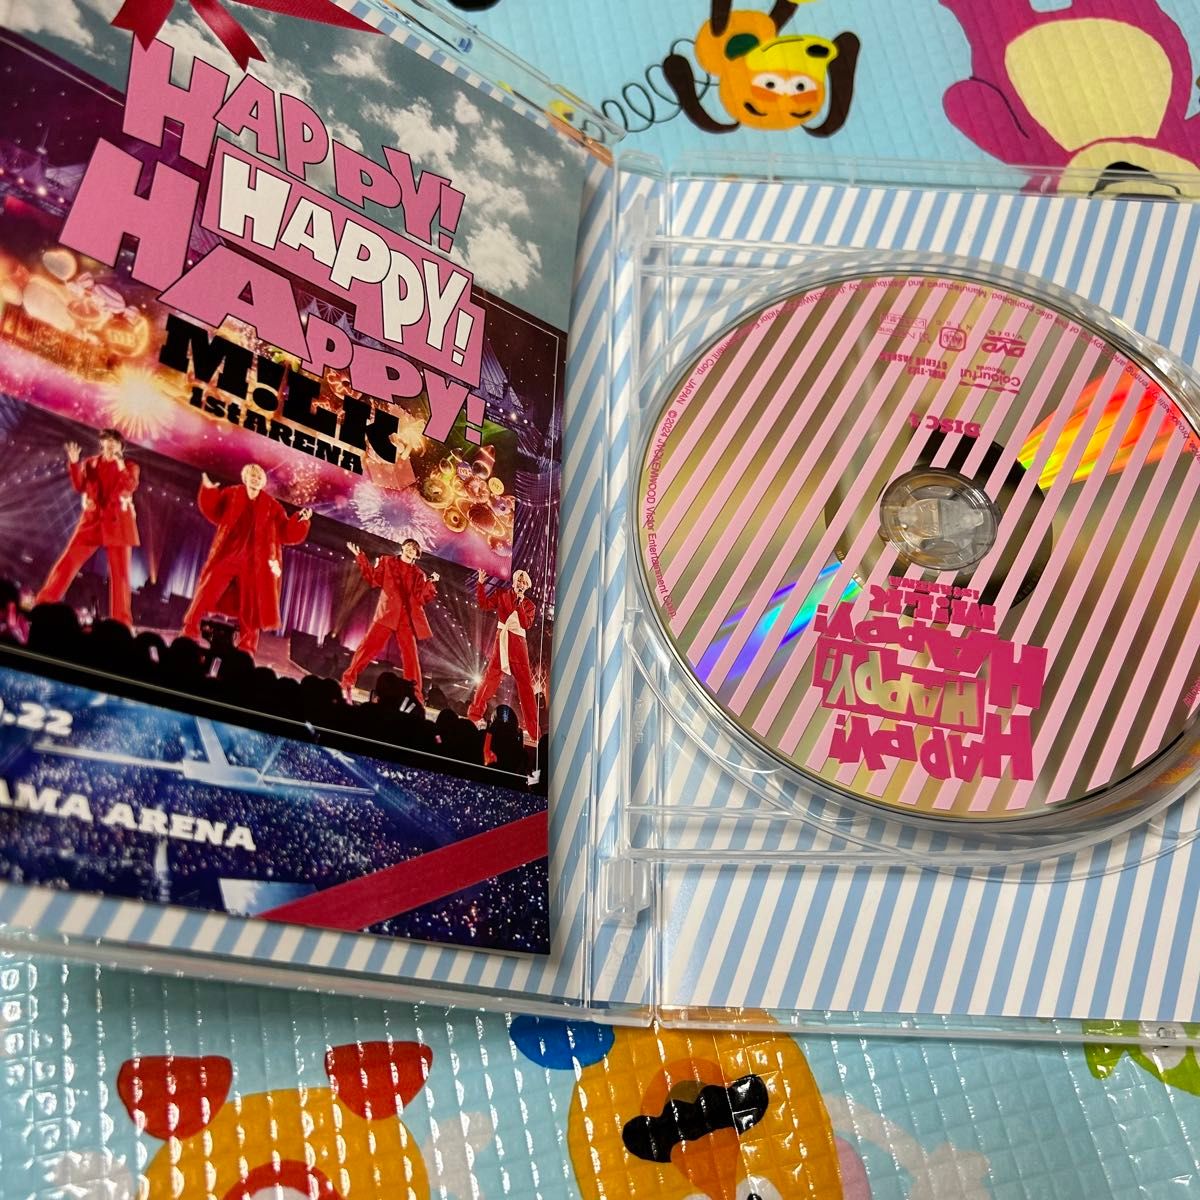 M!LK 1st ARENA "HAPPY! HAPPY! HAPPY!" DVD 